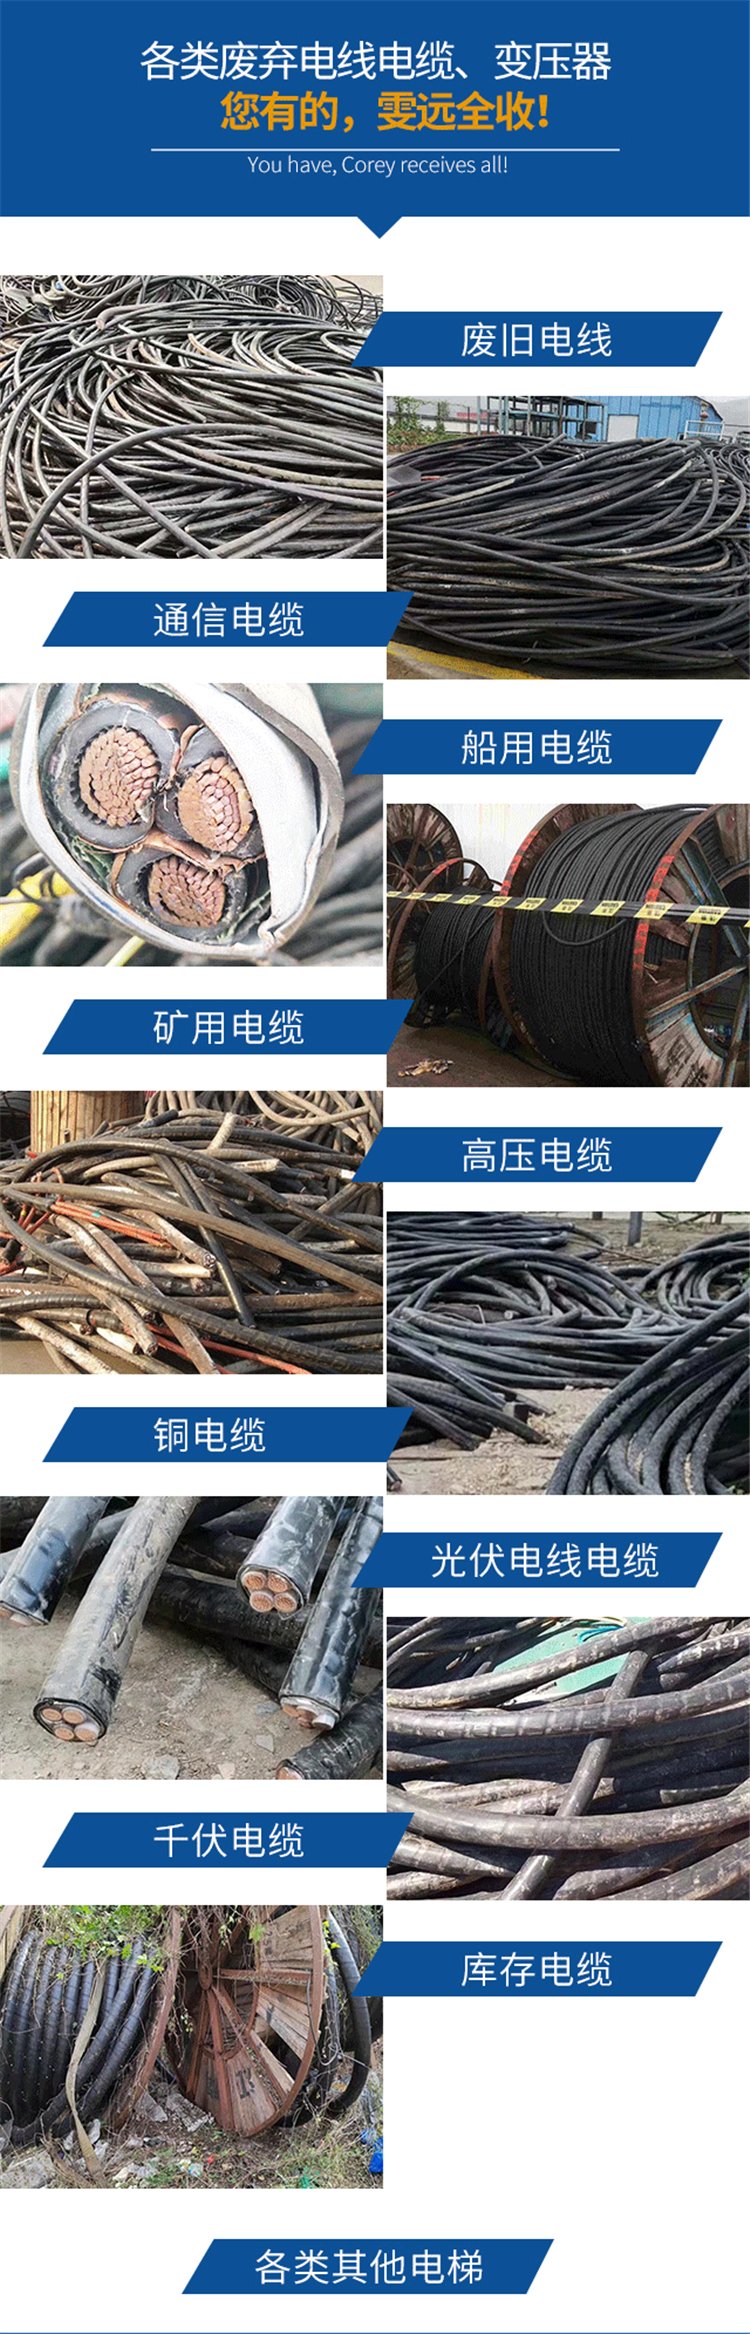 深圳坪山区变电站拆除电缆回收商家收购服务